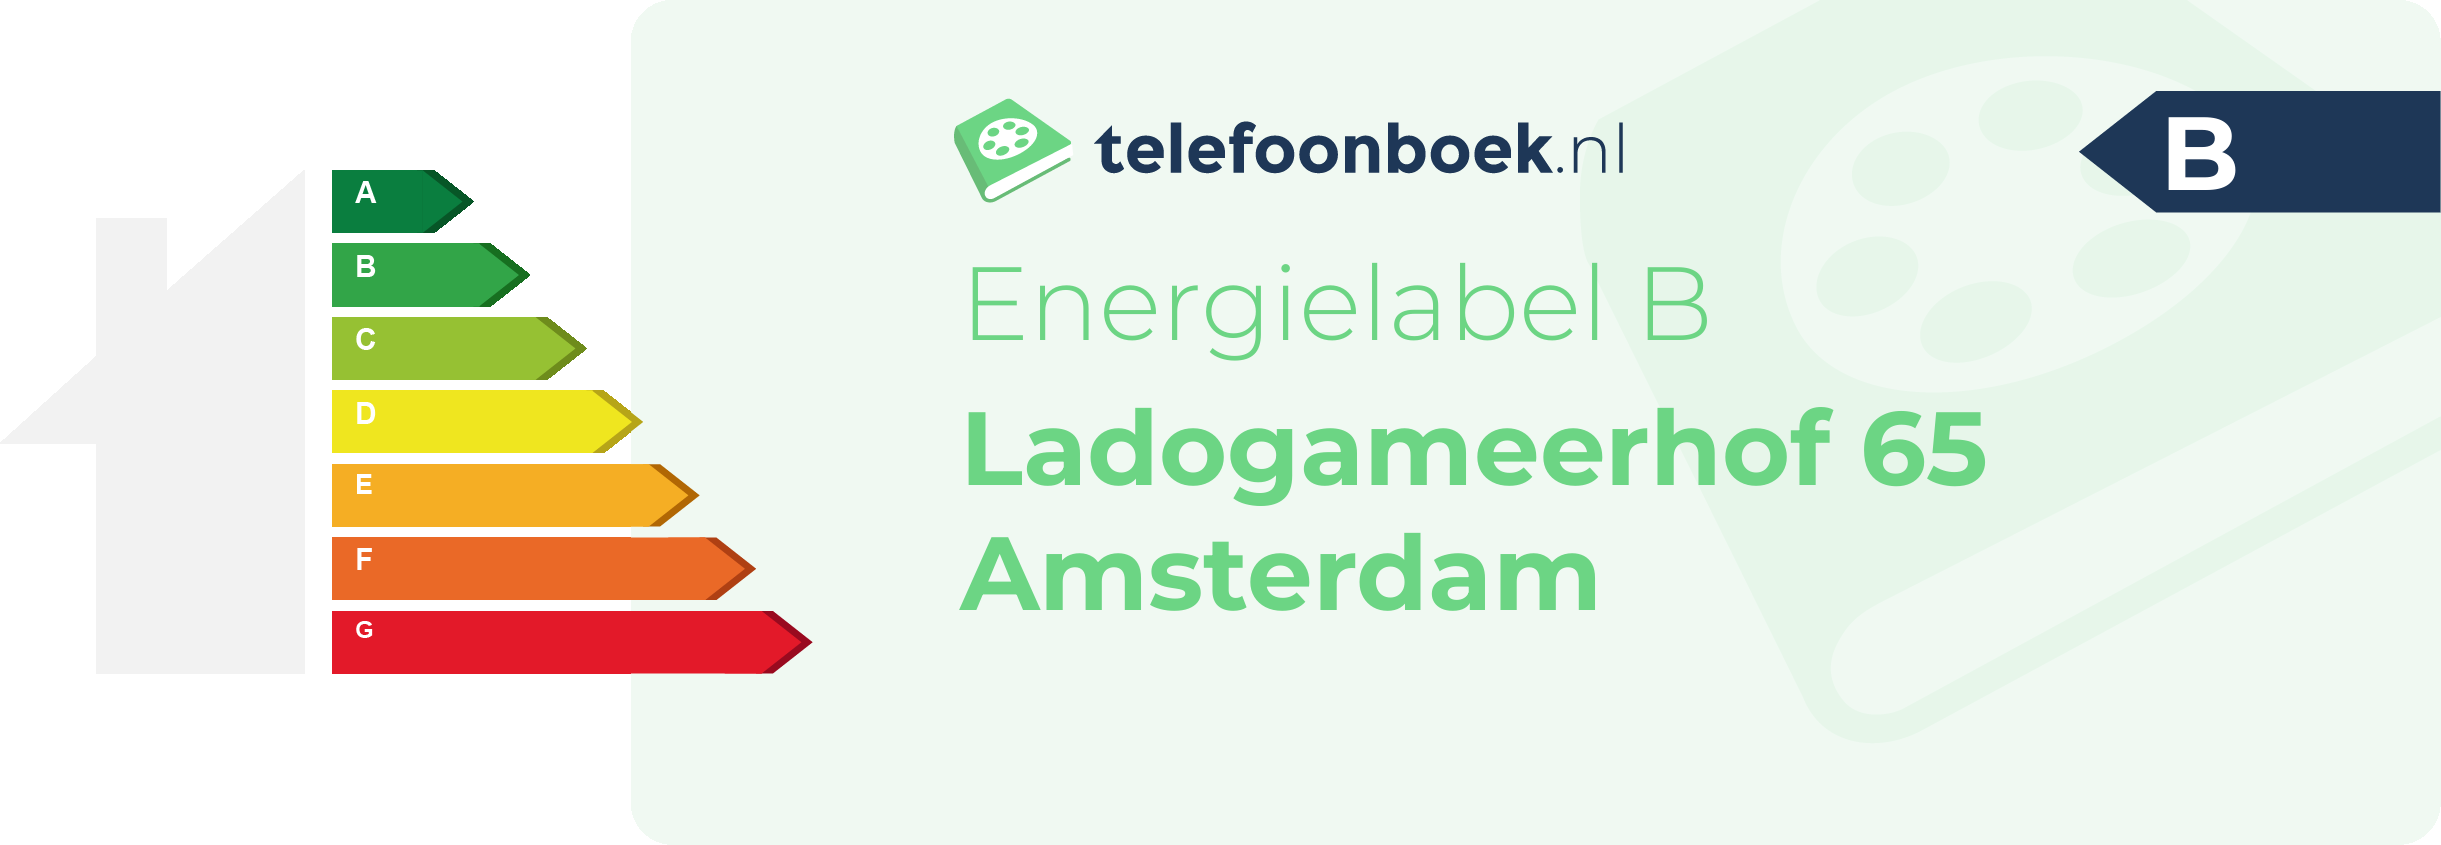 Energielabel Ladogameerhof 65 Amsterdam